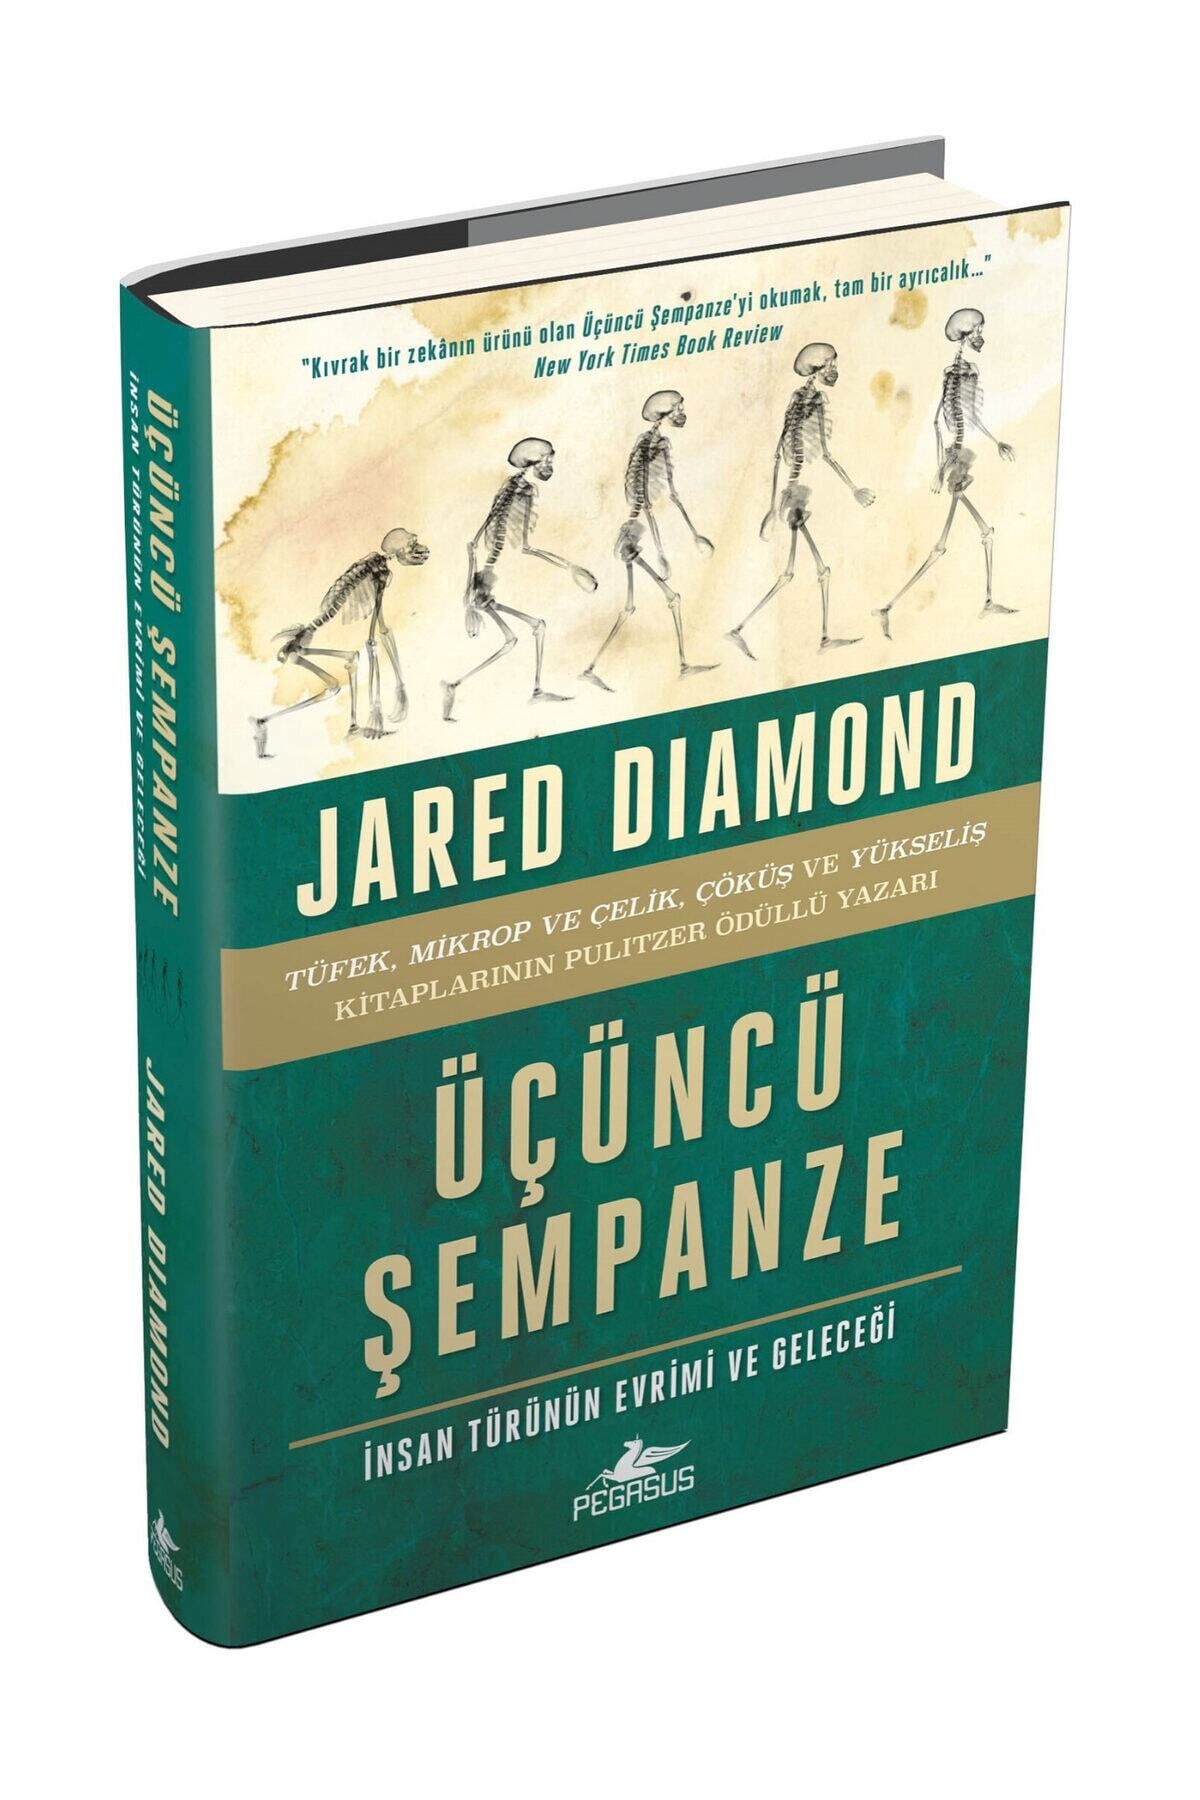 Pegasus Yayınları Üçüncü Şempanze - Insan Türünün Evrimi Ve Geleceği (ciltli) - Jared Diamond